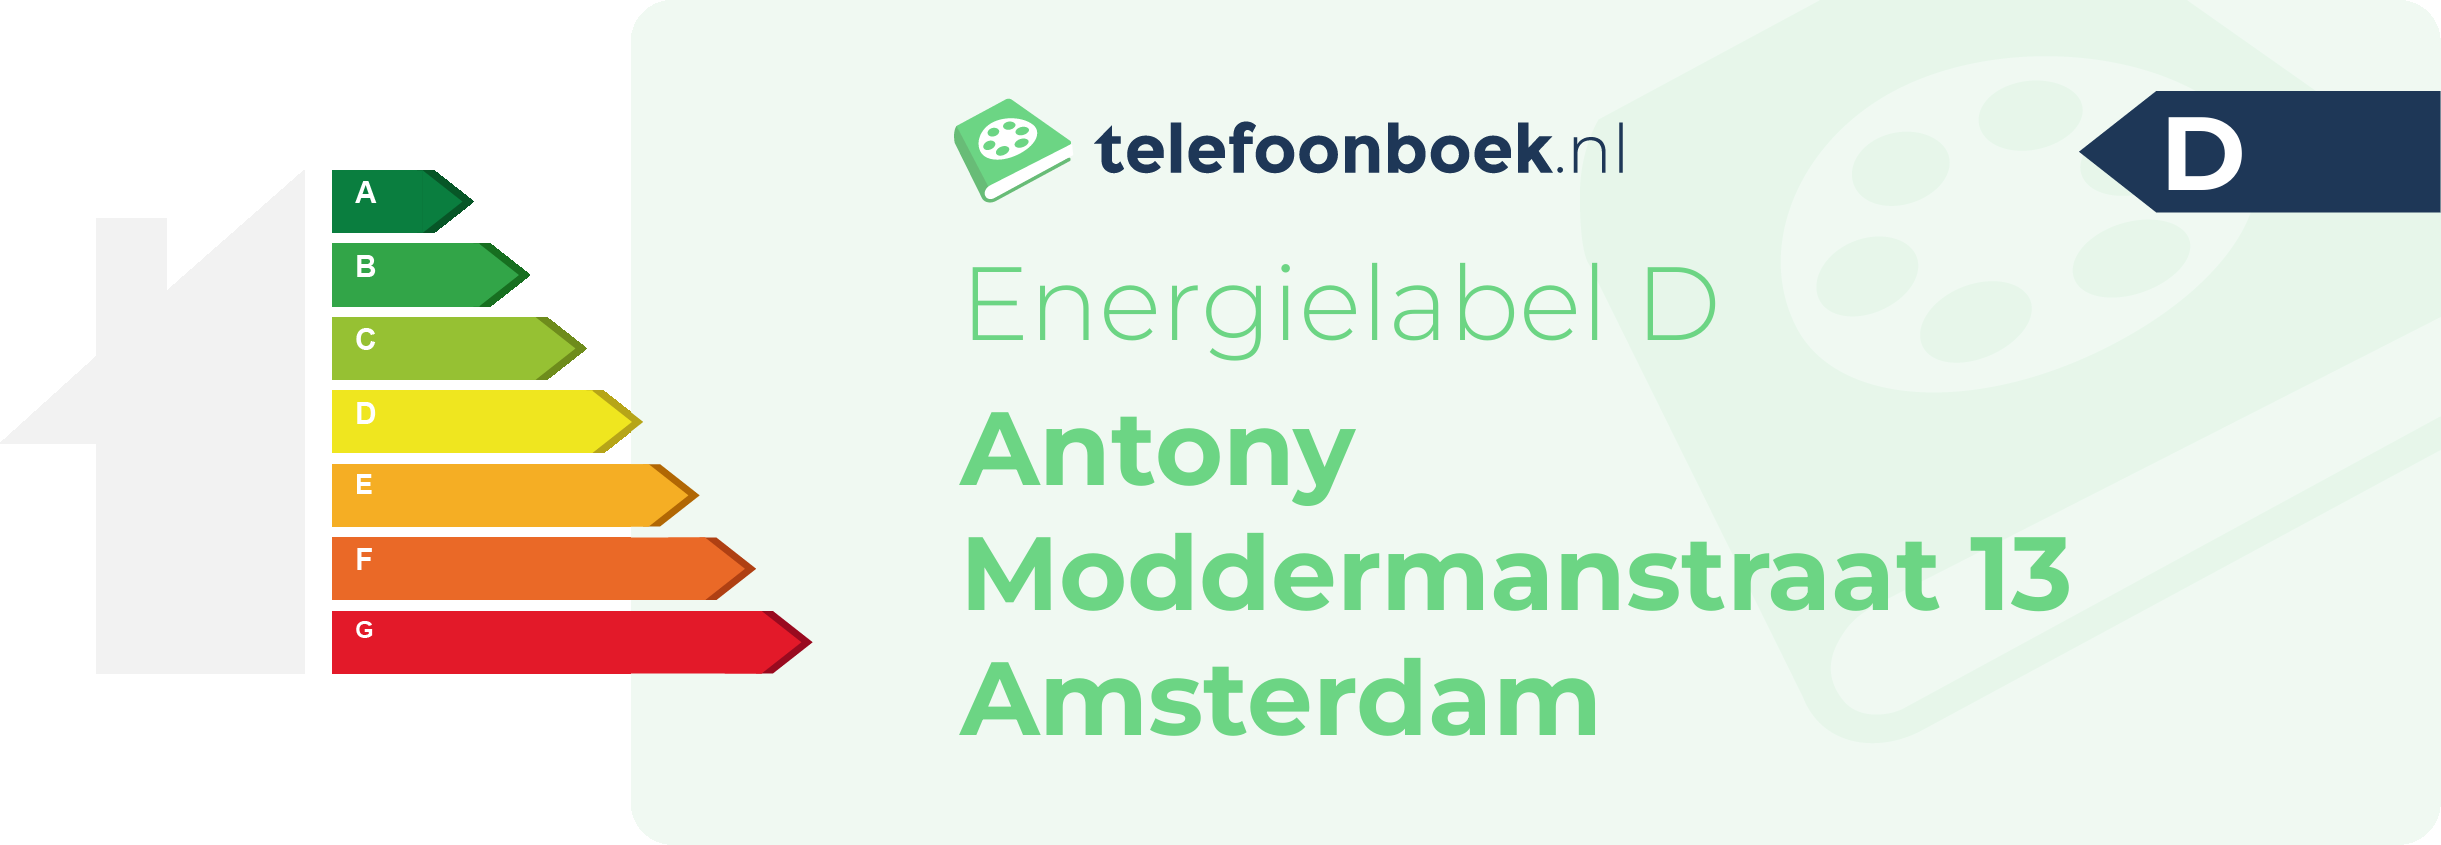 Energielabel Antony Moddermanstraat 13 Amsterdam